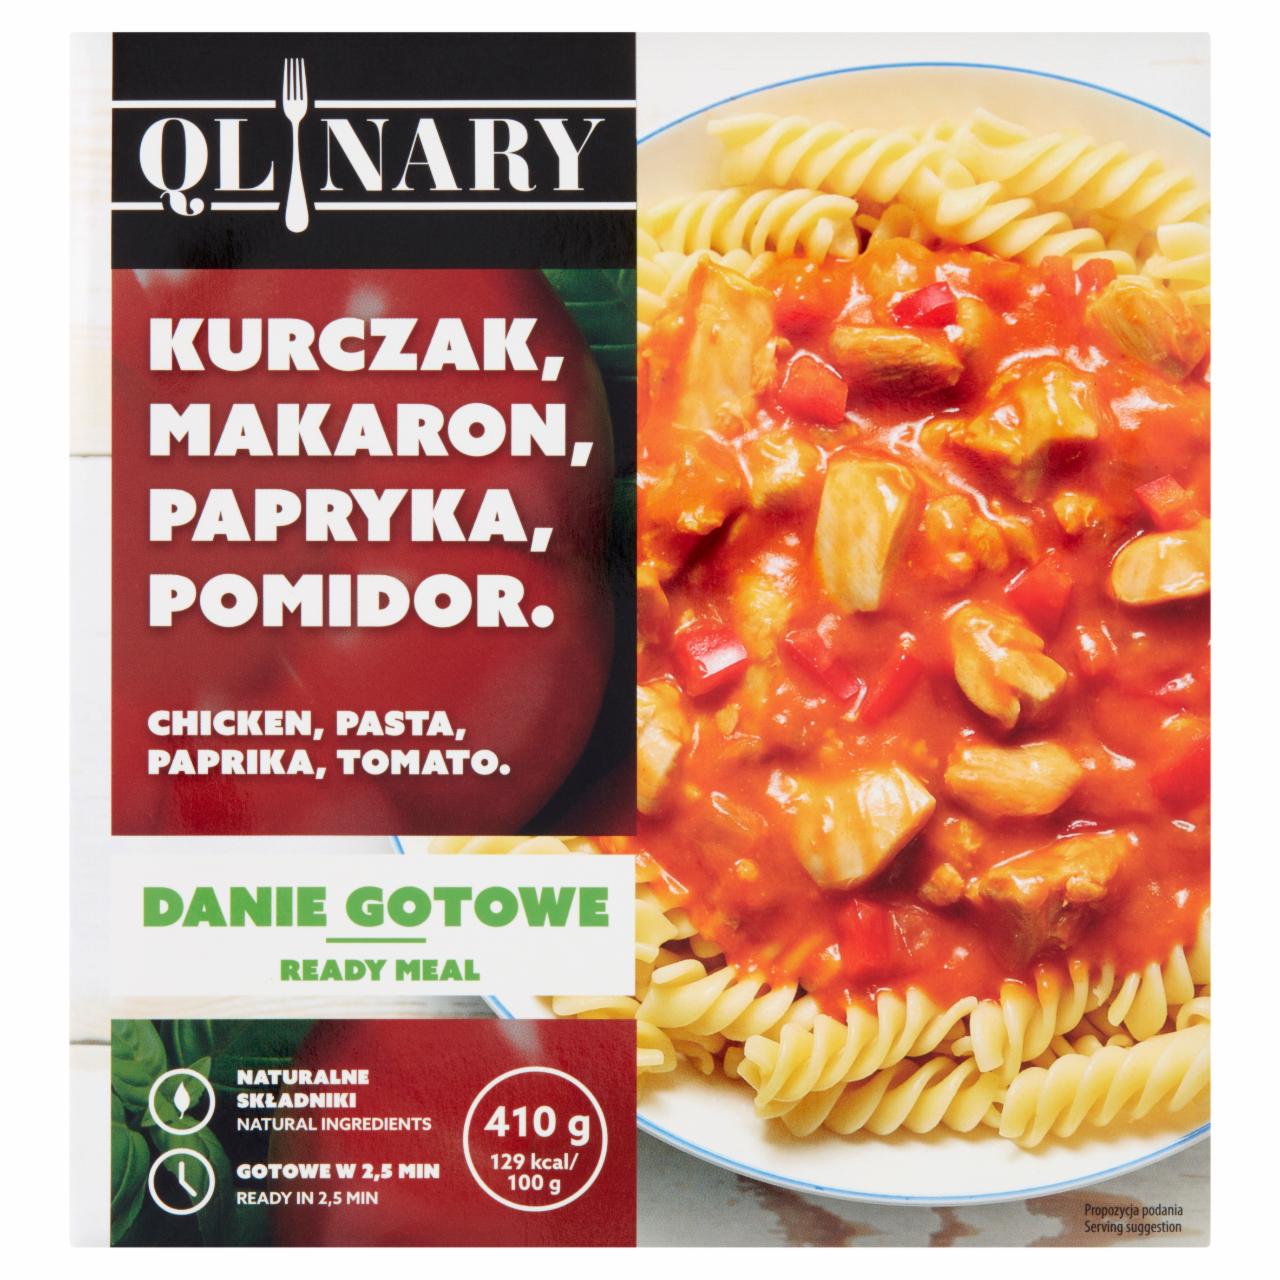 Fotografie - Kurczak, makaron, papryka, pomidor. Qlinary